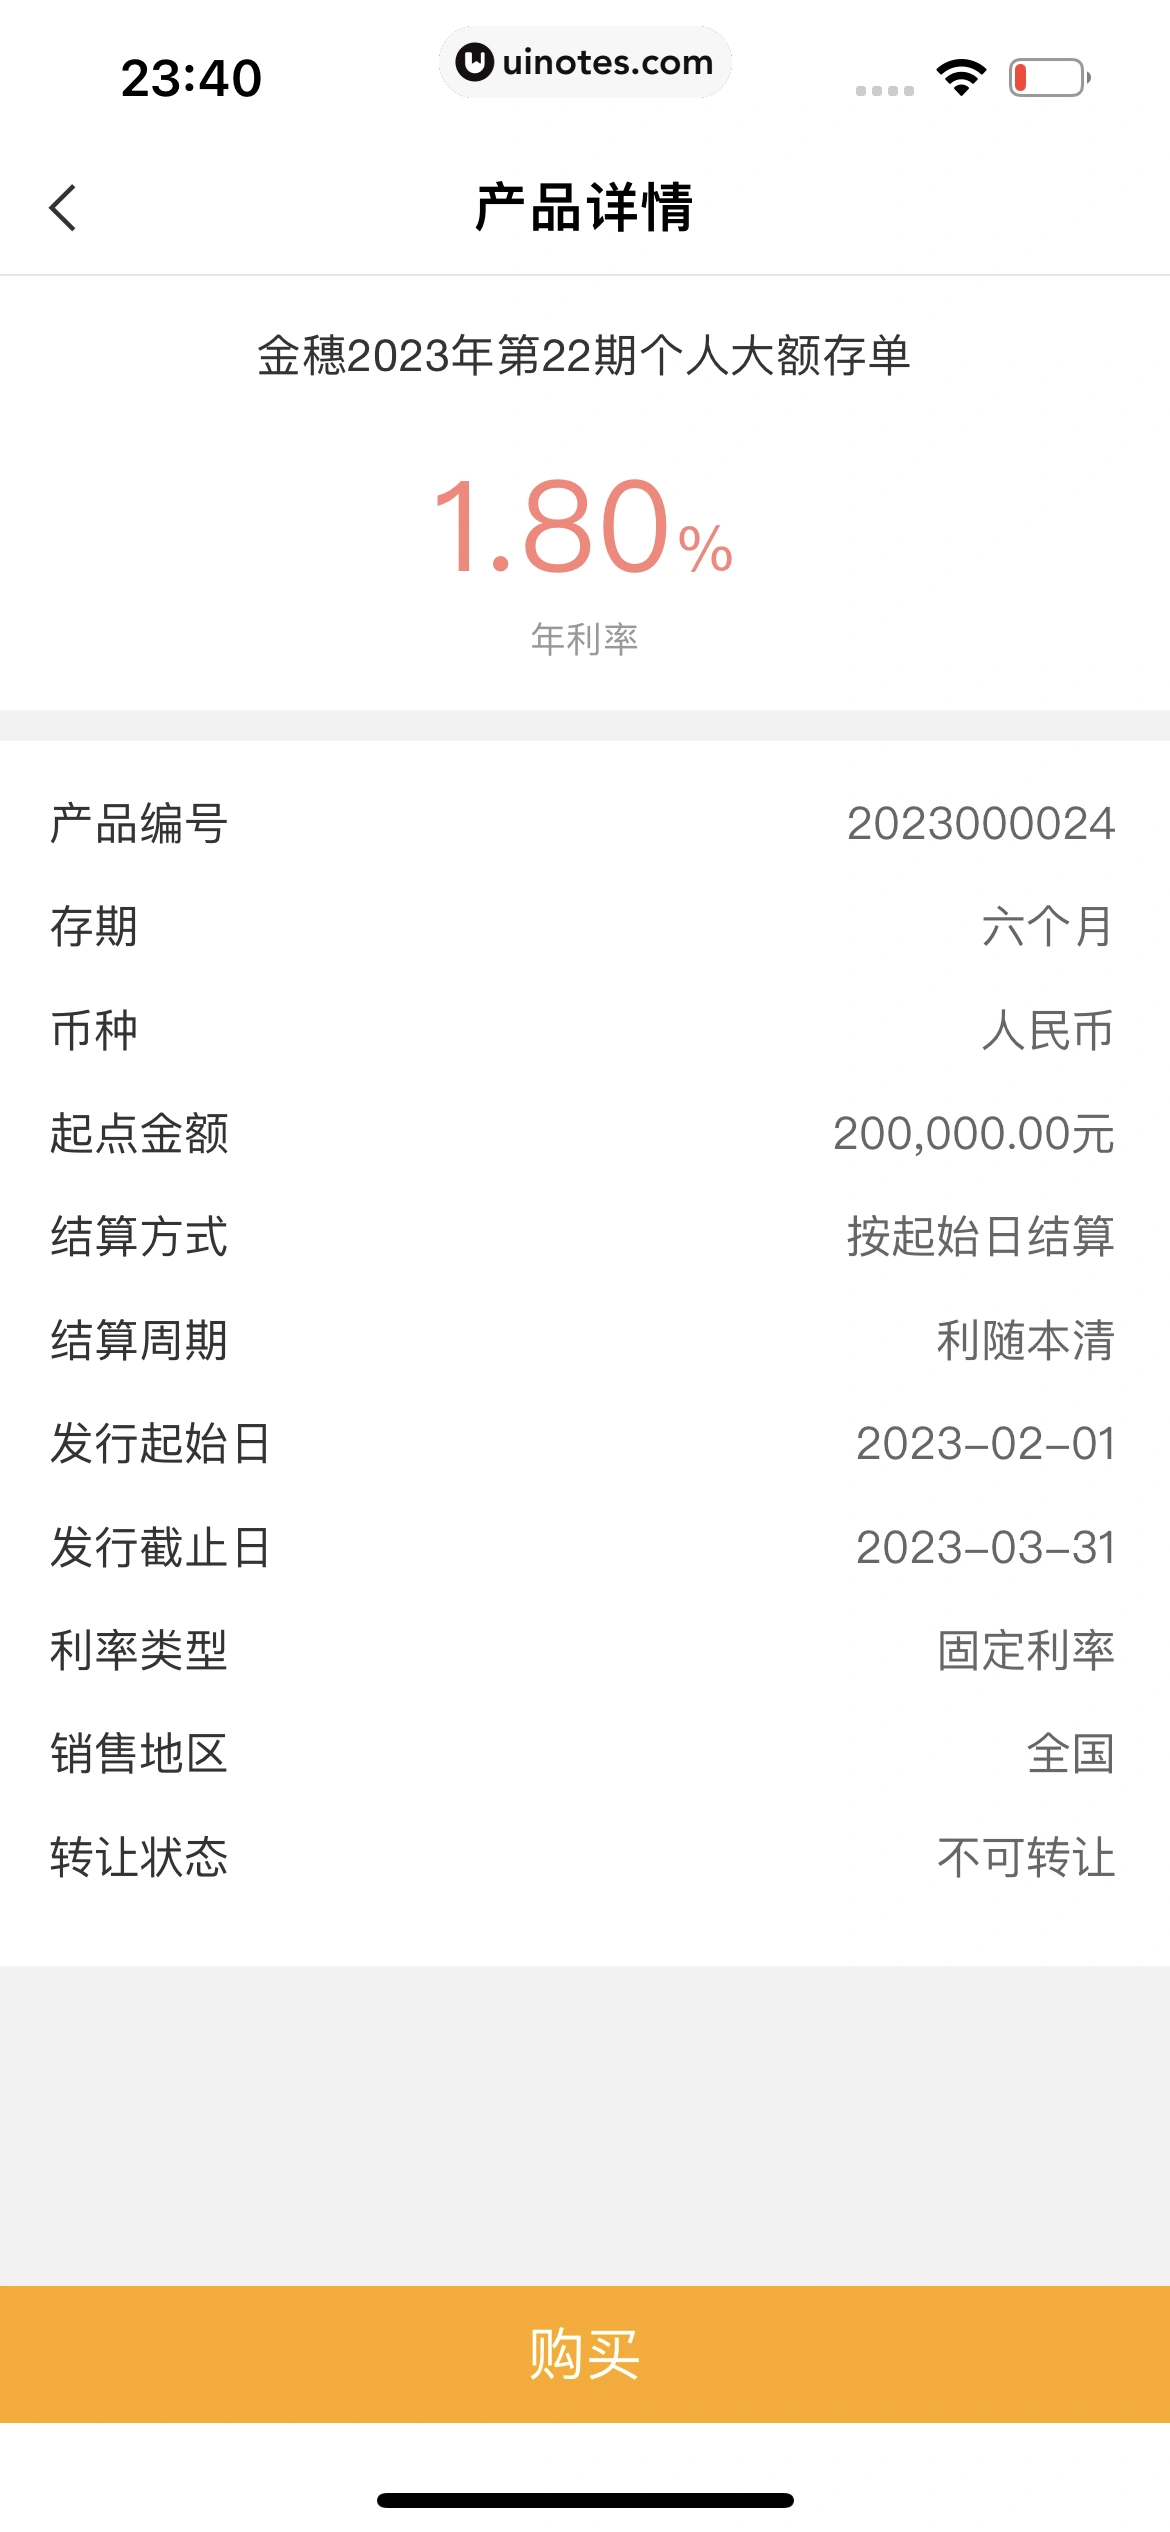 中国农业银行 App 截图 118 - UI Notes